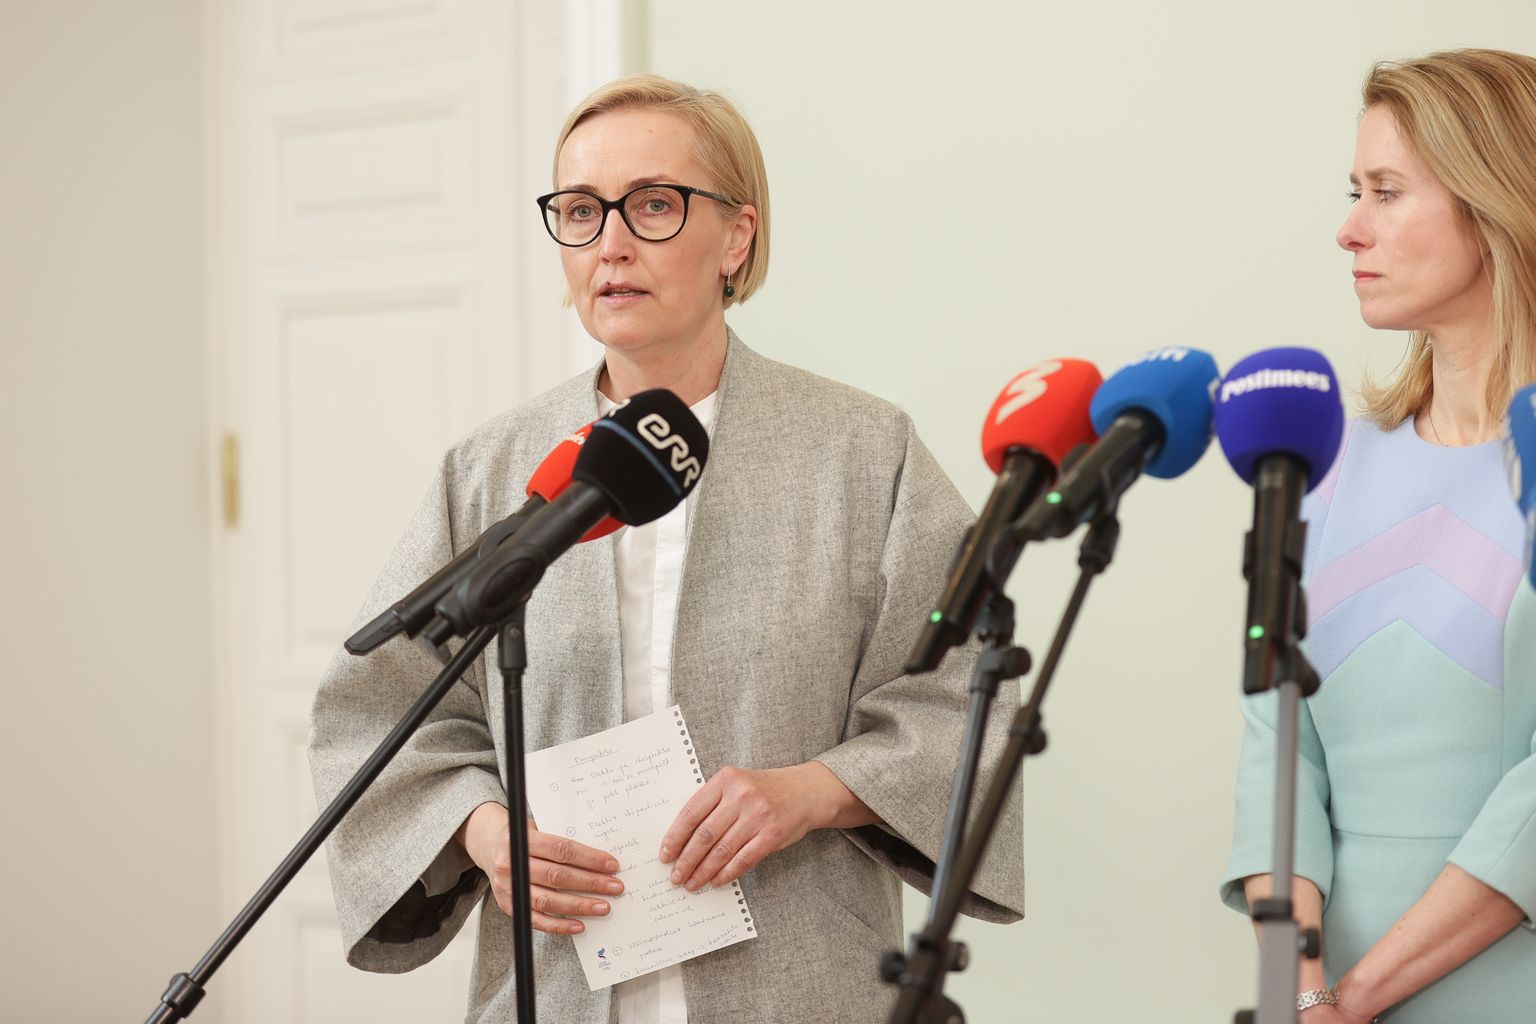 Koalitsioonikõneluste pressibriifil osalesid Kristina Kallas, Kaja Kallas ja Riina Sikkut.